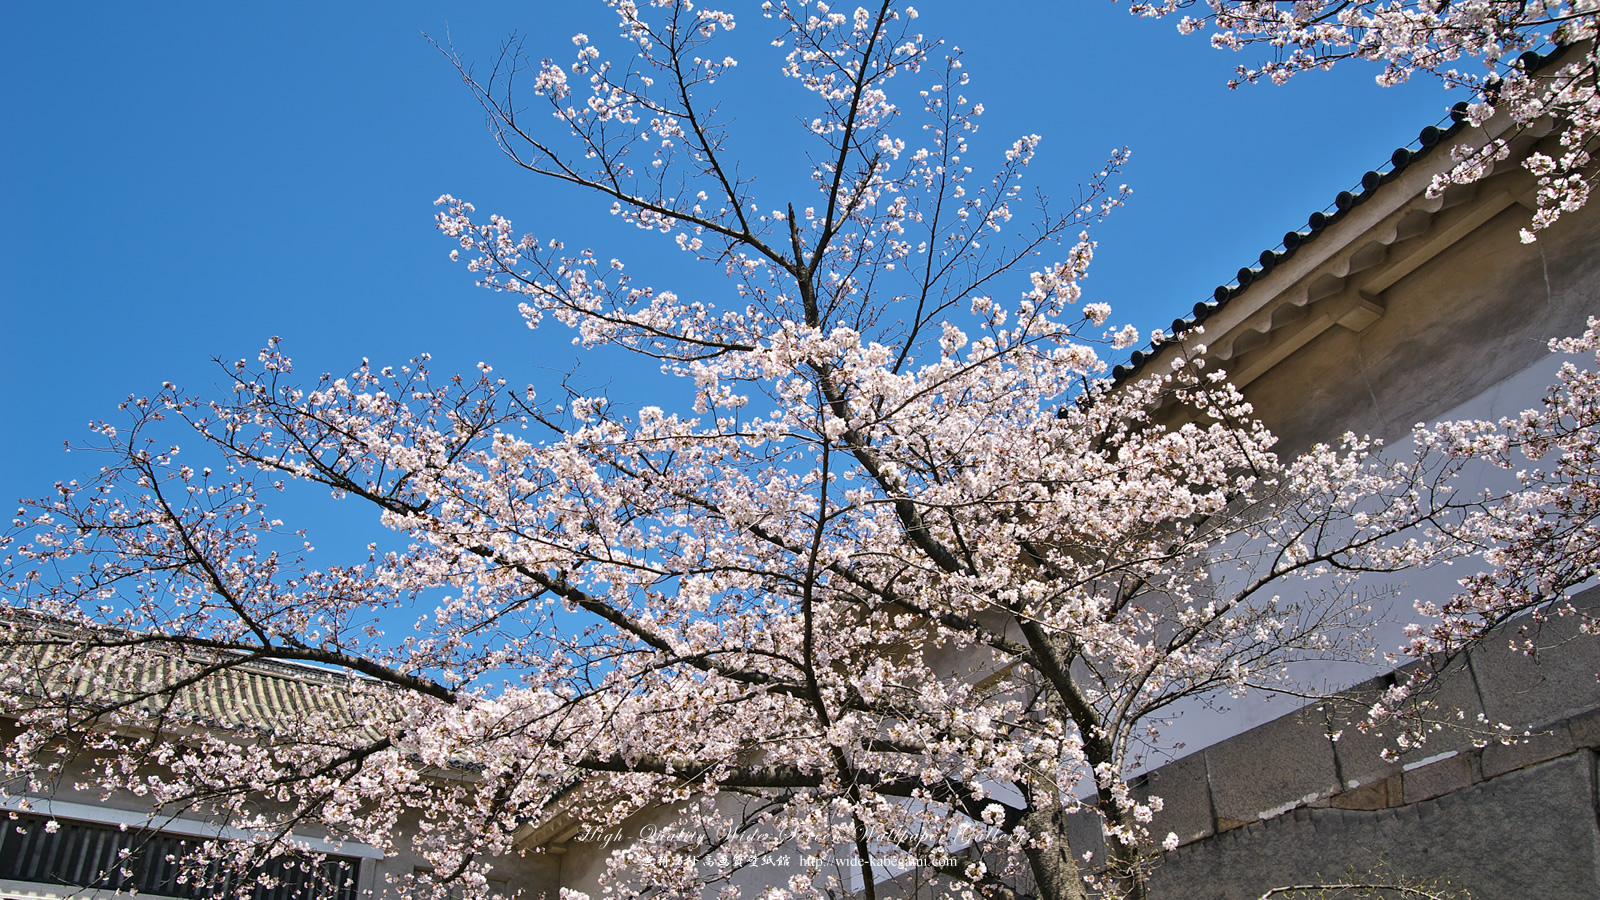 自然風景のワイド壁紙 1600x900 大阪城の桜 1 無料ワイド高画質壁紙館